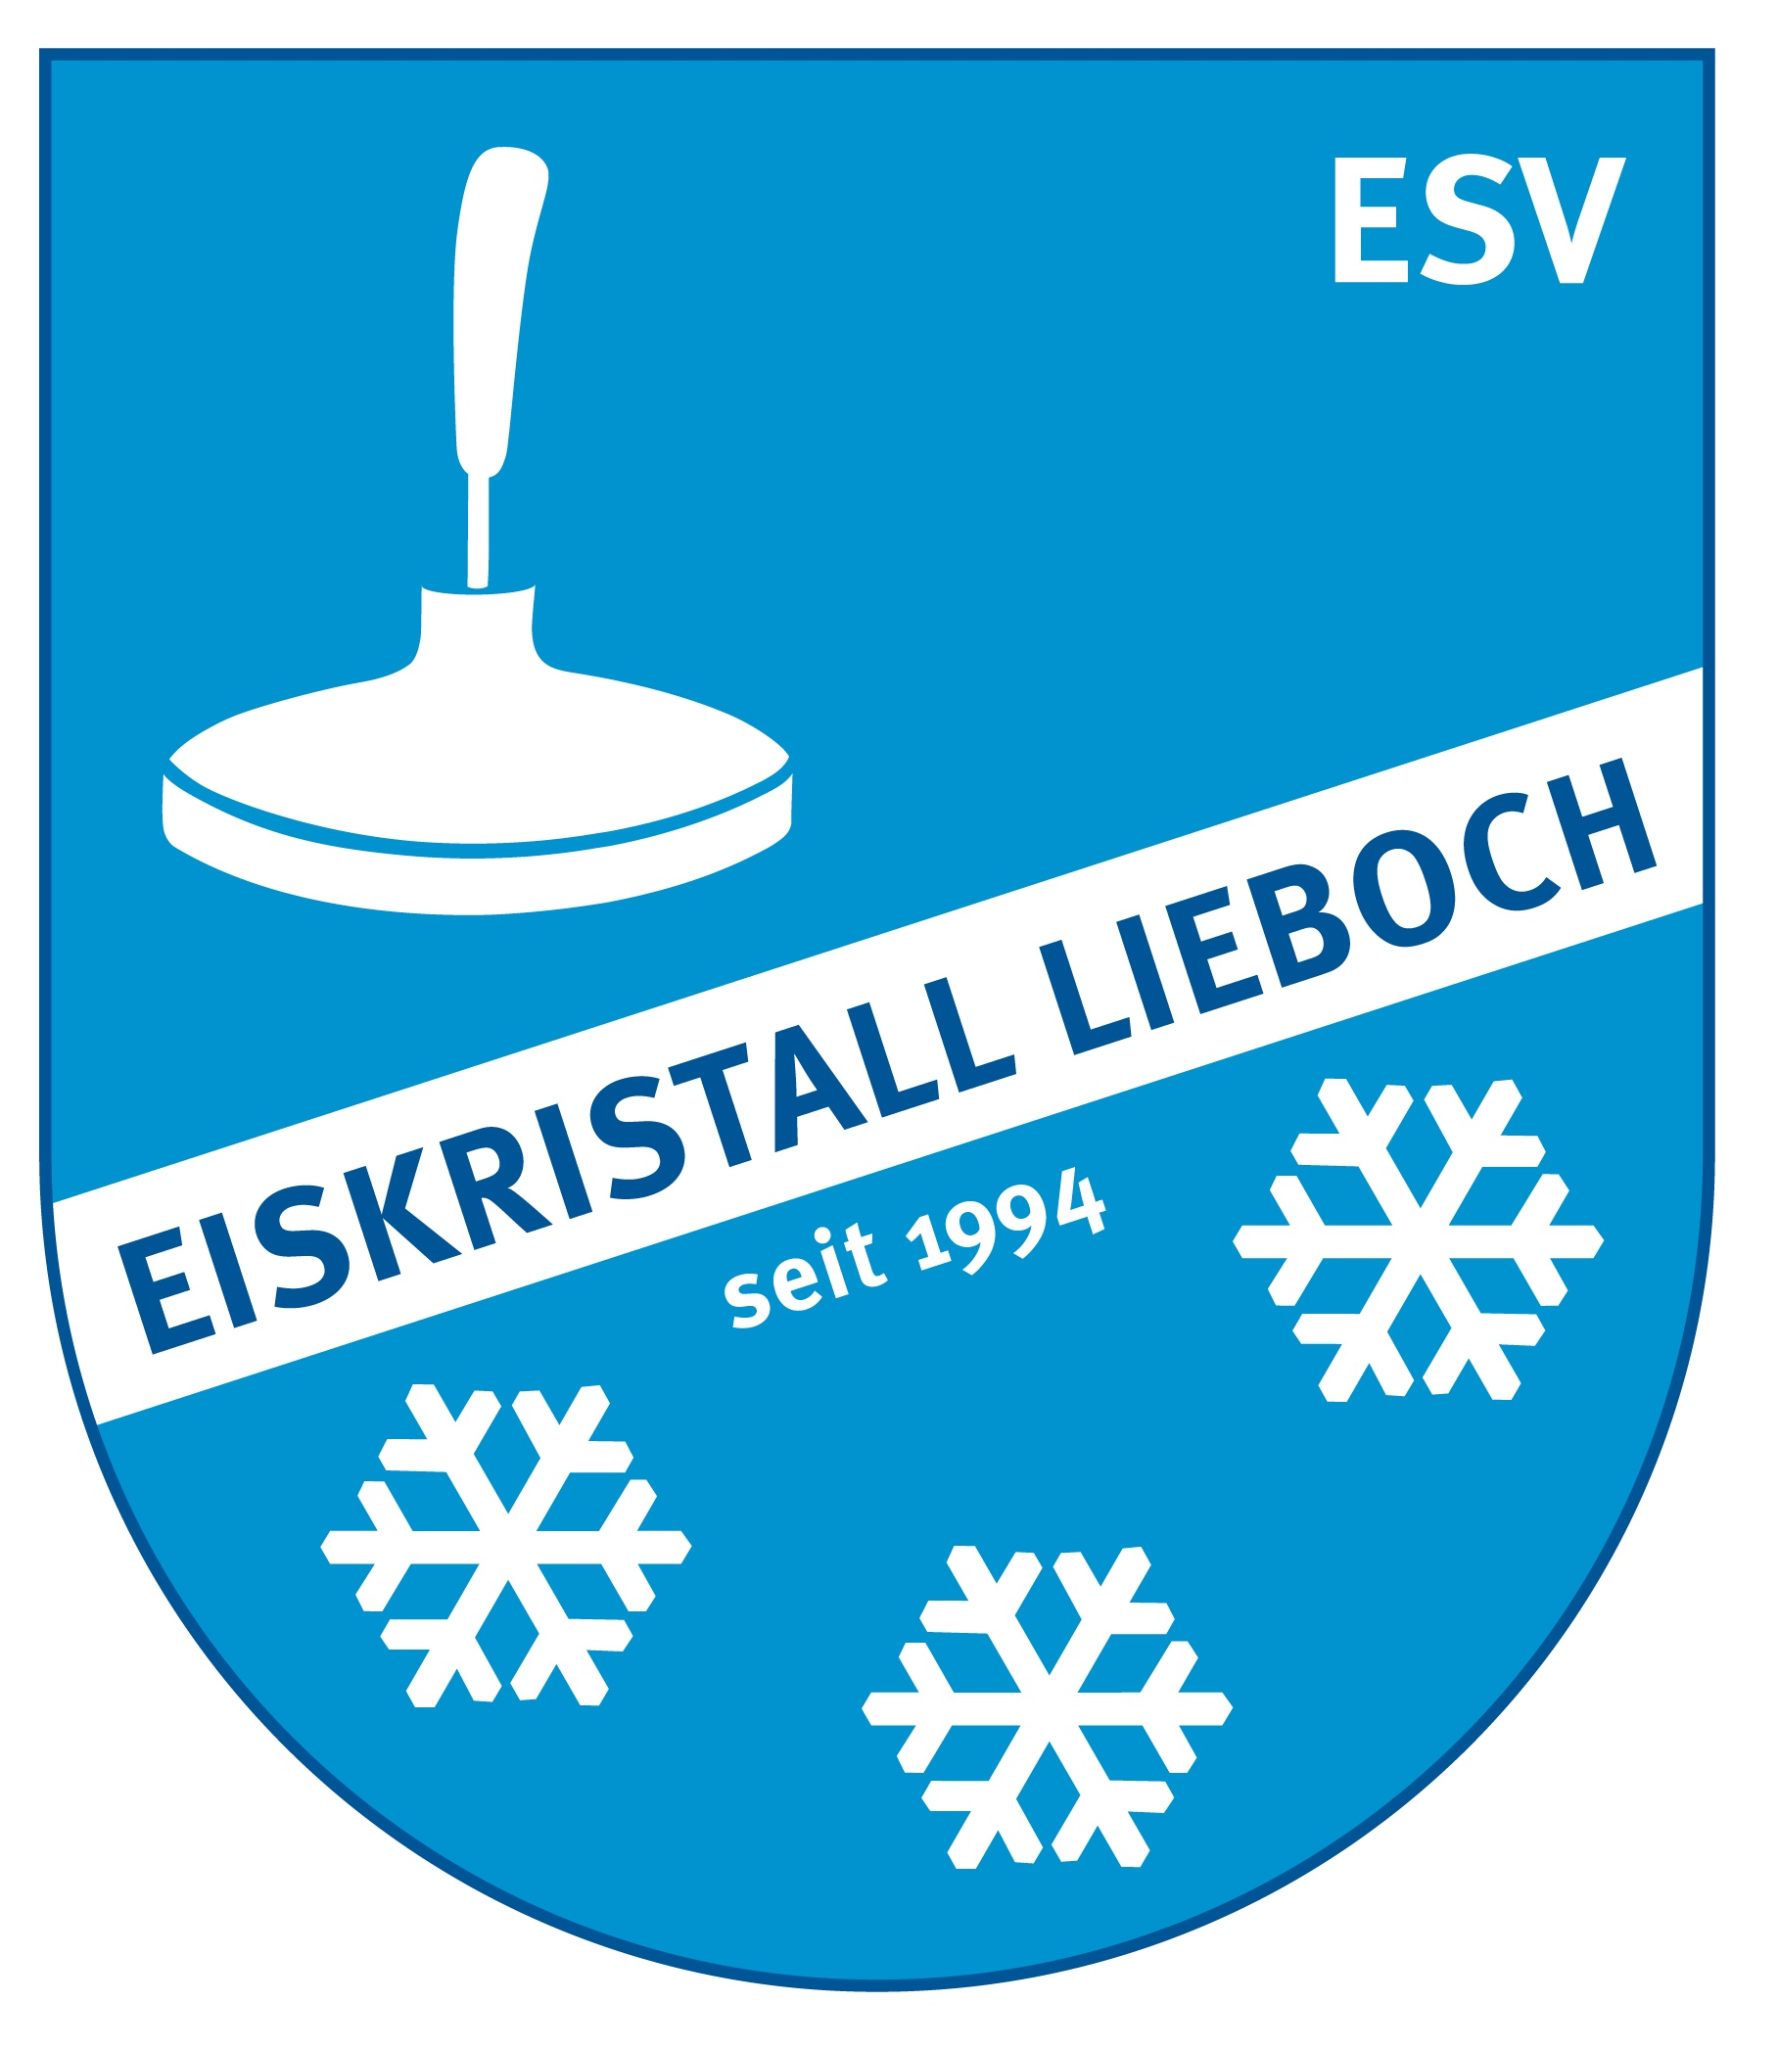 ESV Eiskristall Lieboch 1